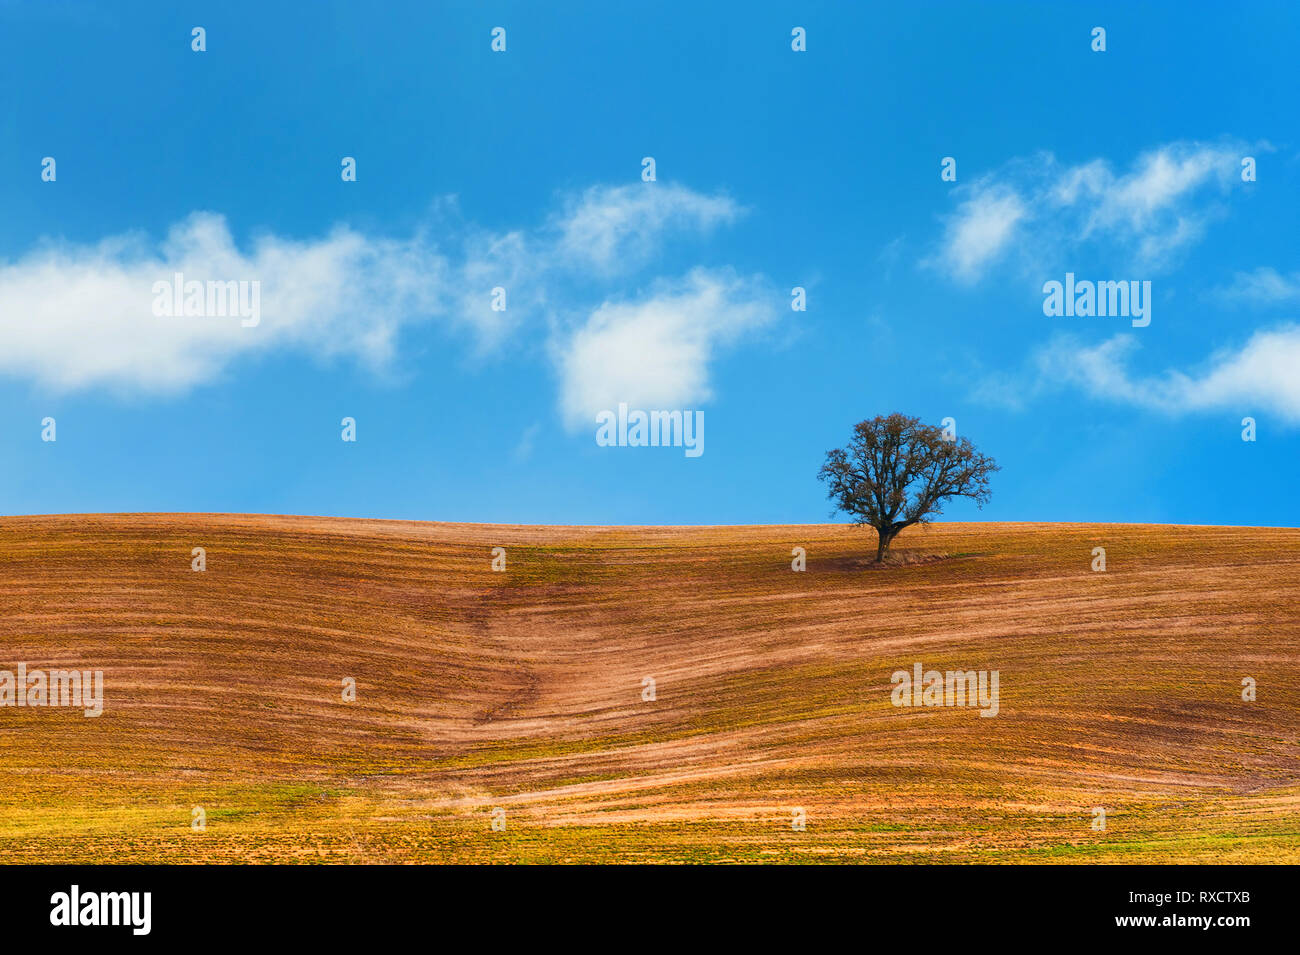 Wispy nuvole bianche galleggiante nel cielo blu su un campo agricolo su una collina dove un lone tree stand. Foto Stock